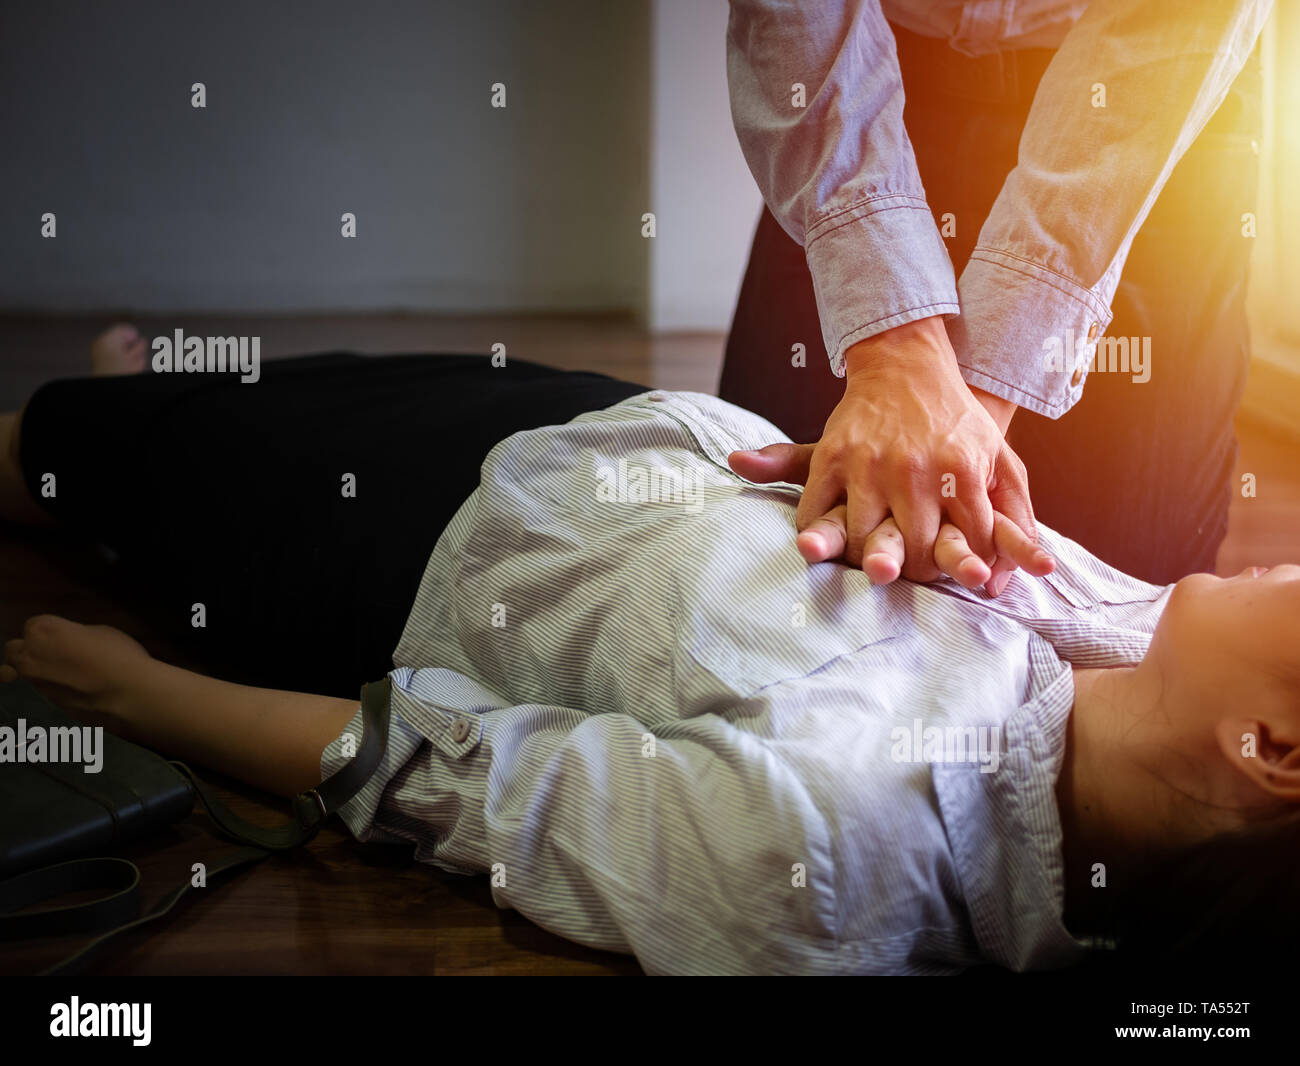 Freiwillige Büro Mann verwenden Sie die Handpumpe an der Brust für Erste Hilfe Notfall HLW auf Herzinfarkt Frau bewusstlos, versuchen Patienten Frau bei der Arbeit Reanimation Stockfoto